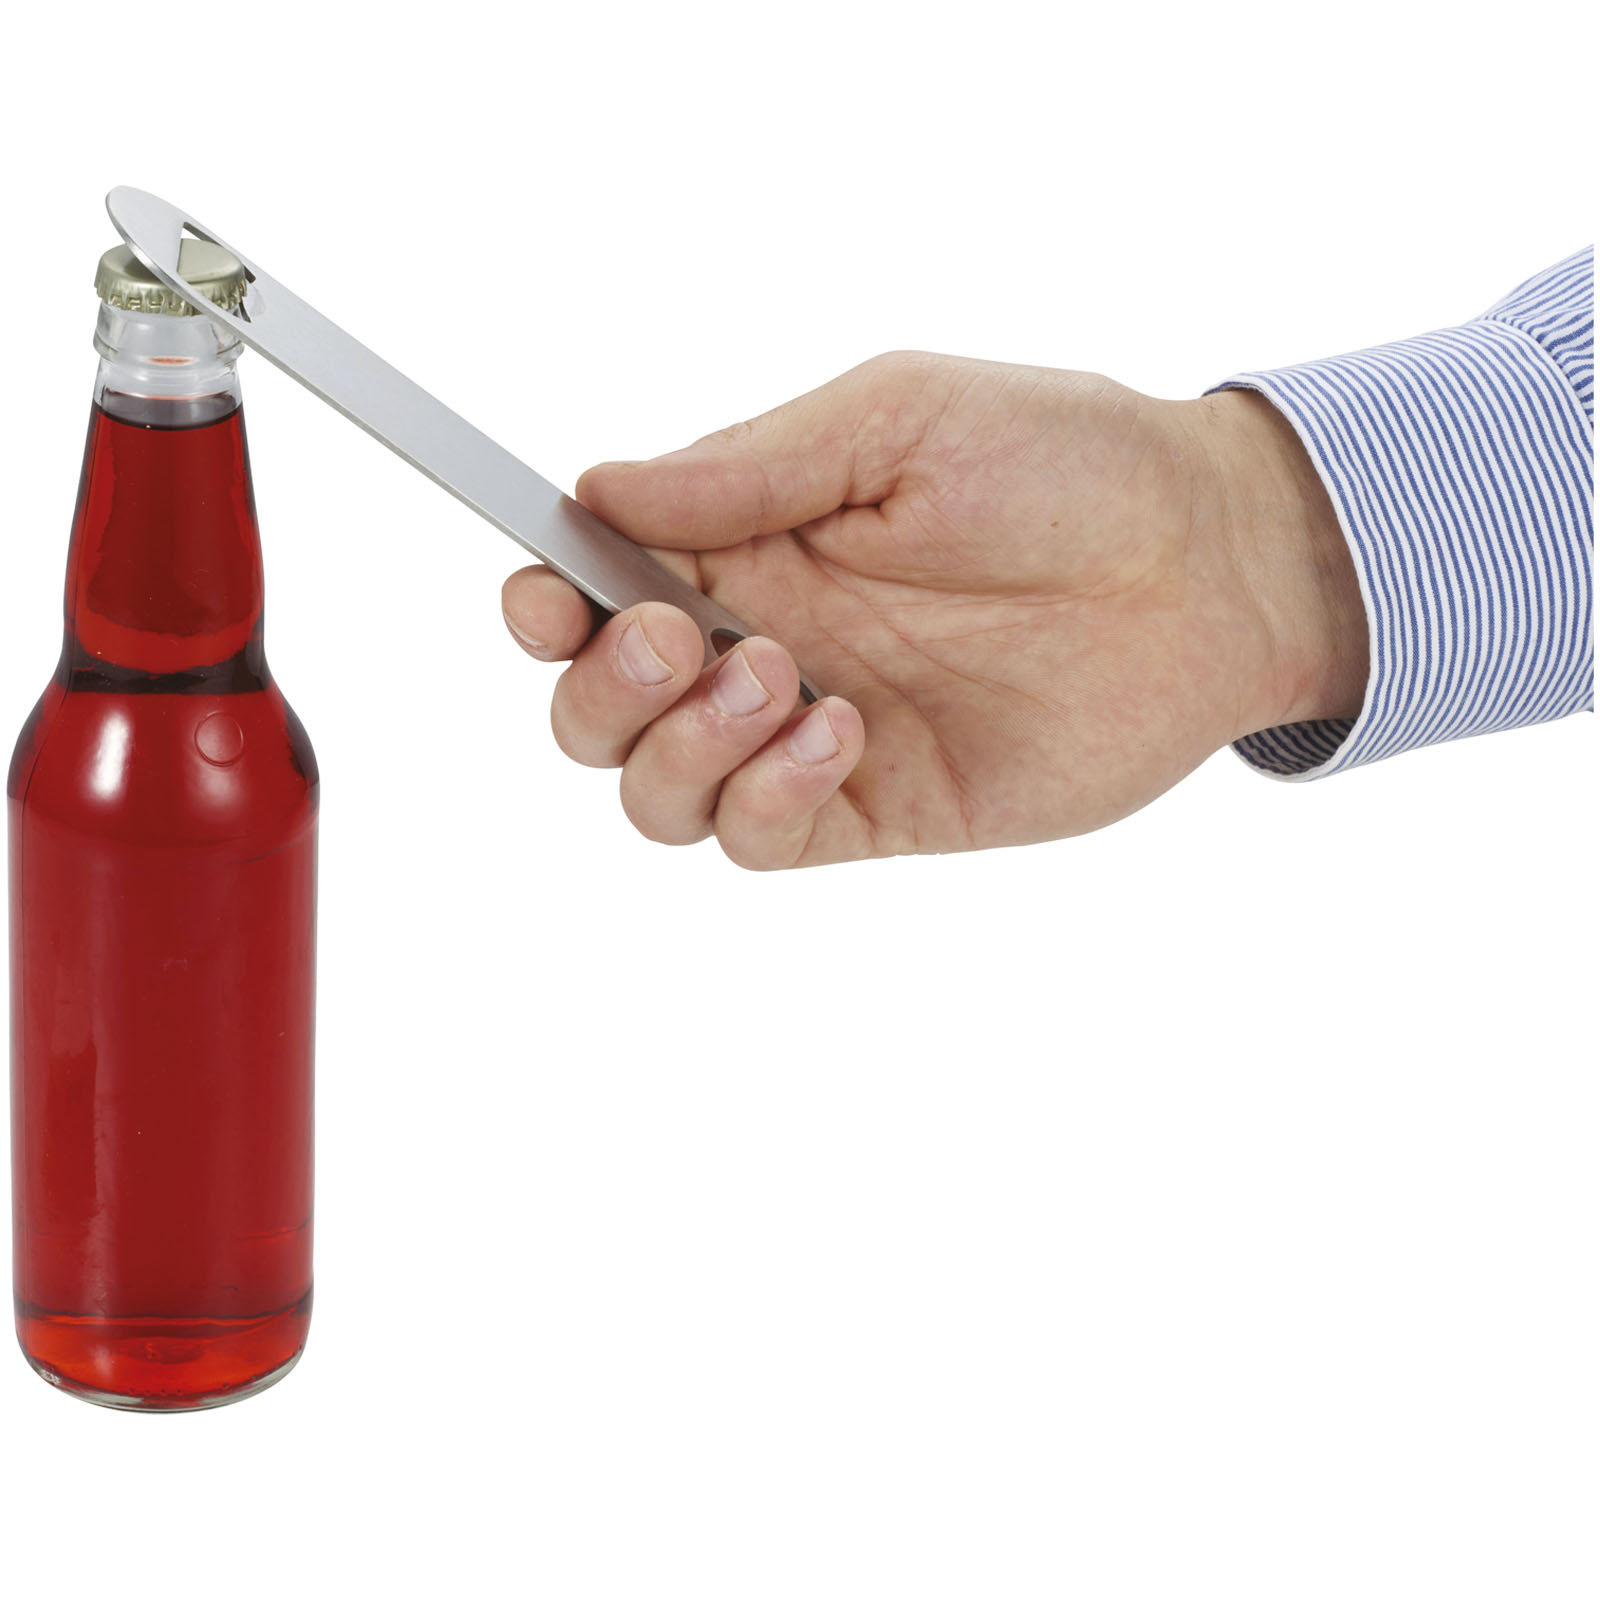 Paddle bottle opener